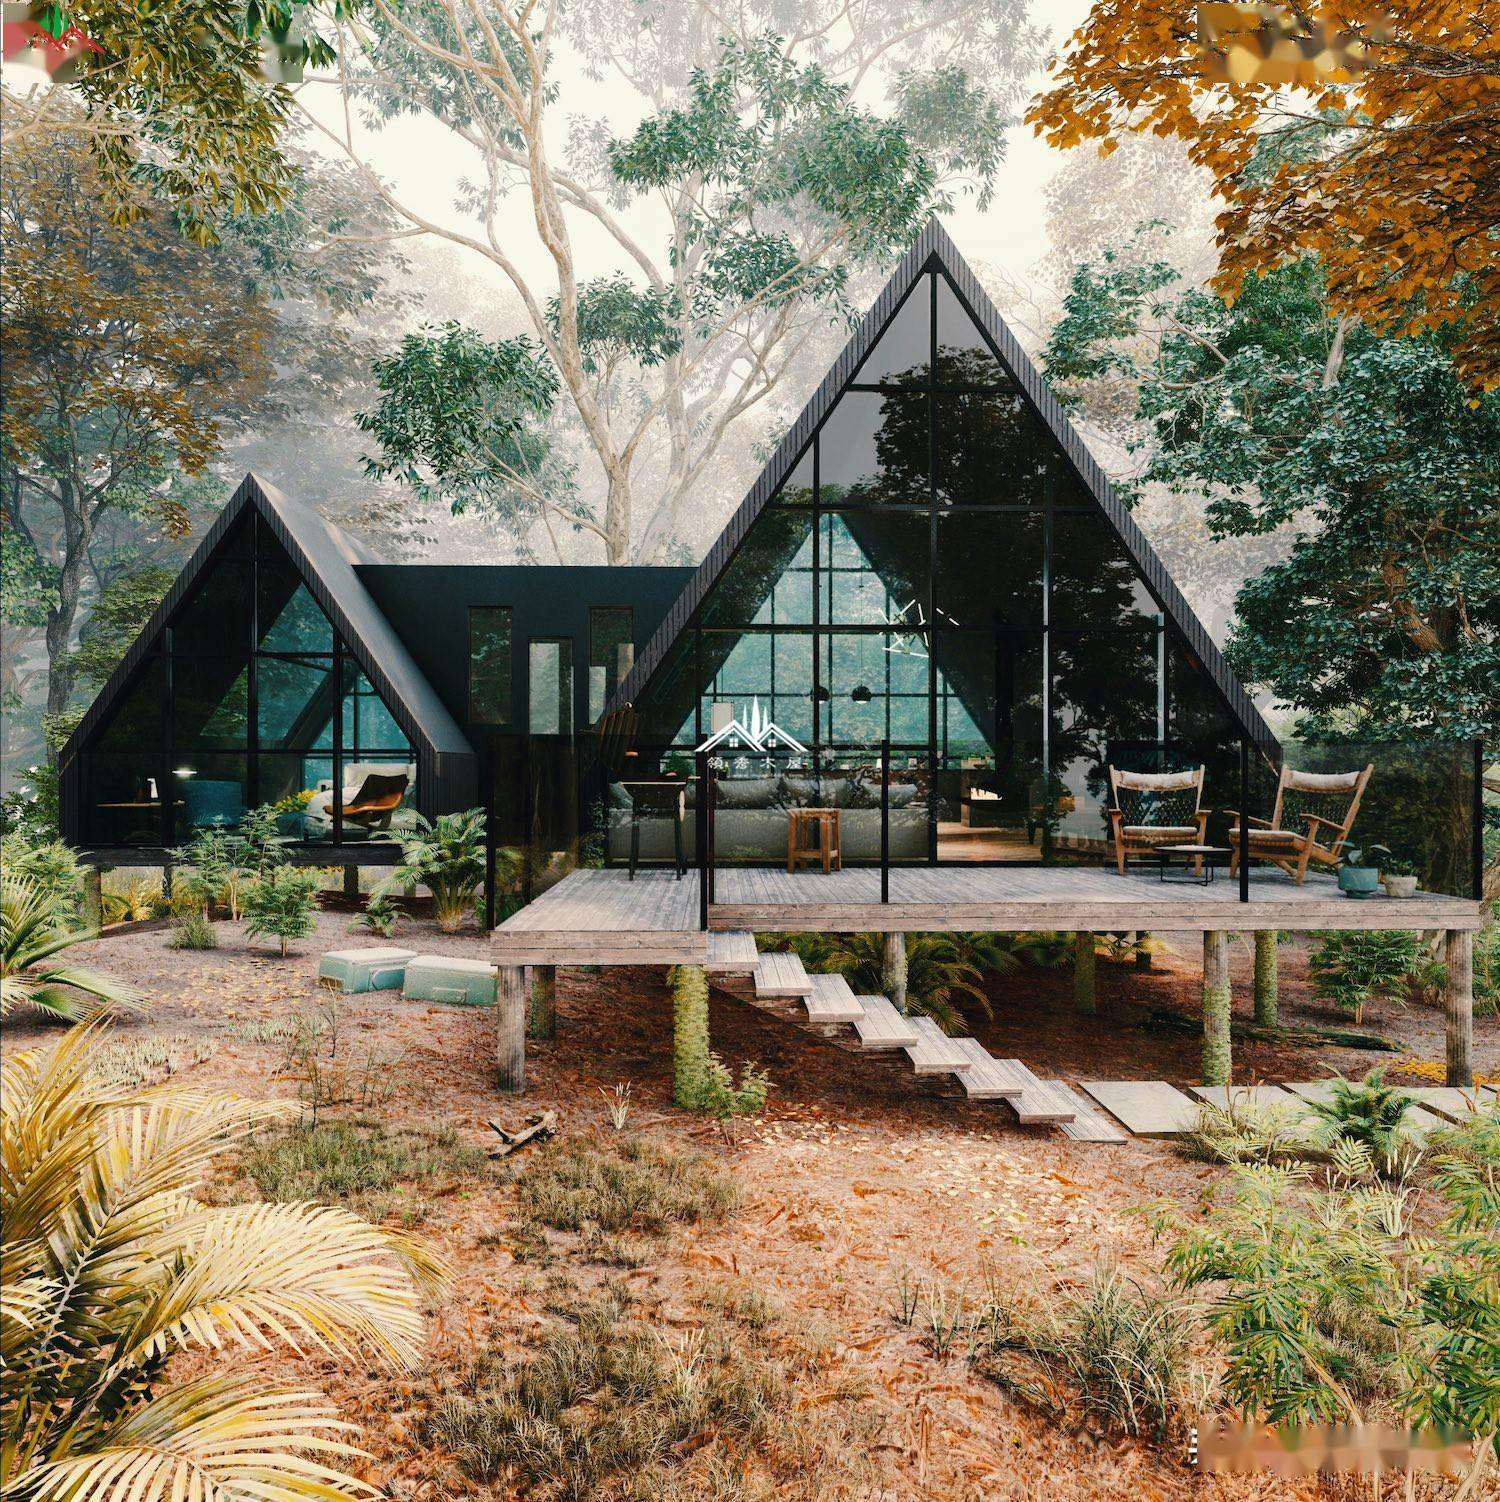 听说上万的人都喜欢这三角小度假木屋尤其是有森林度假景区的地方